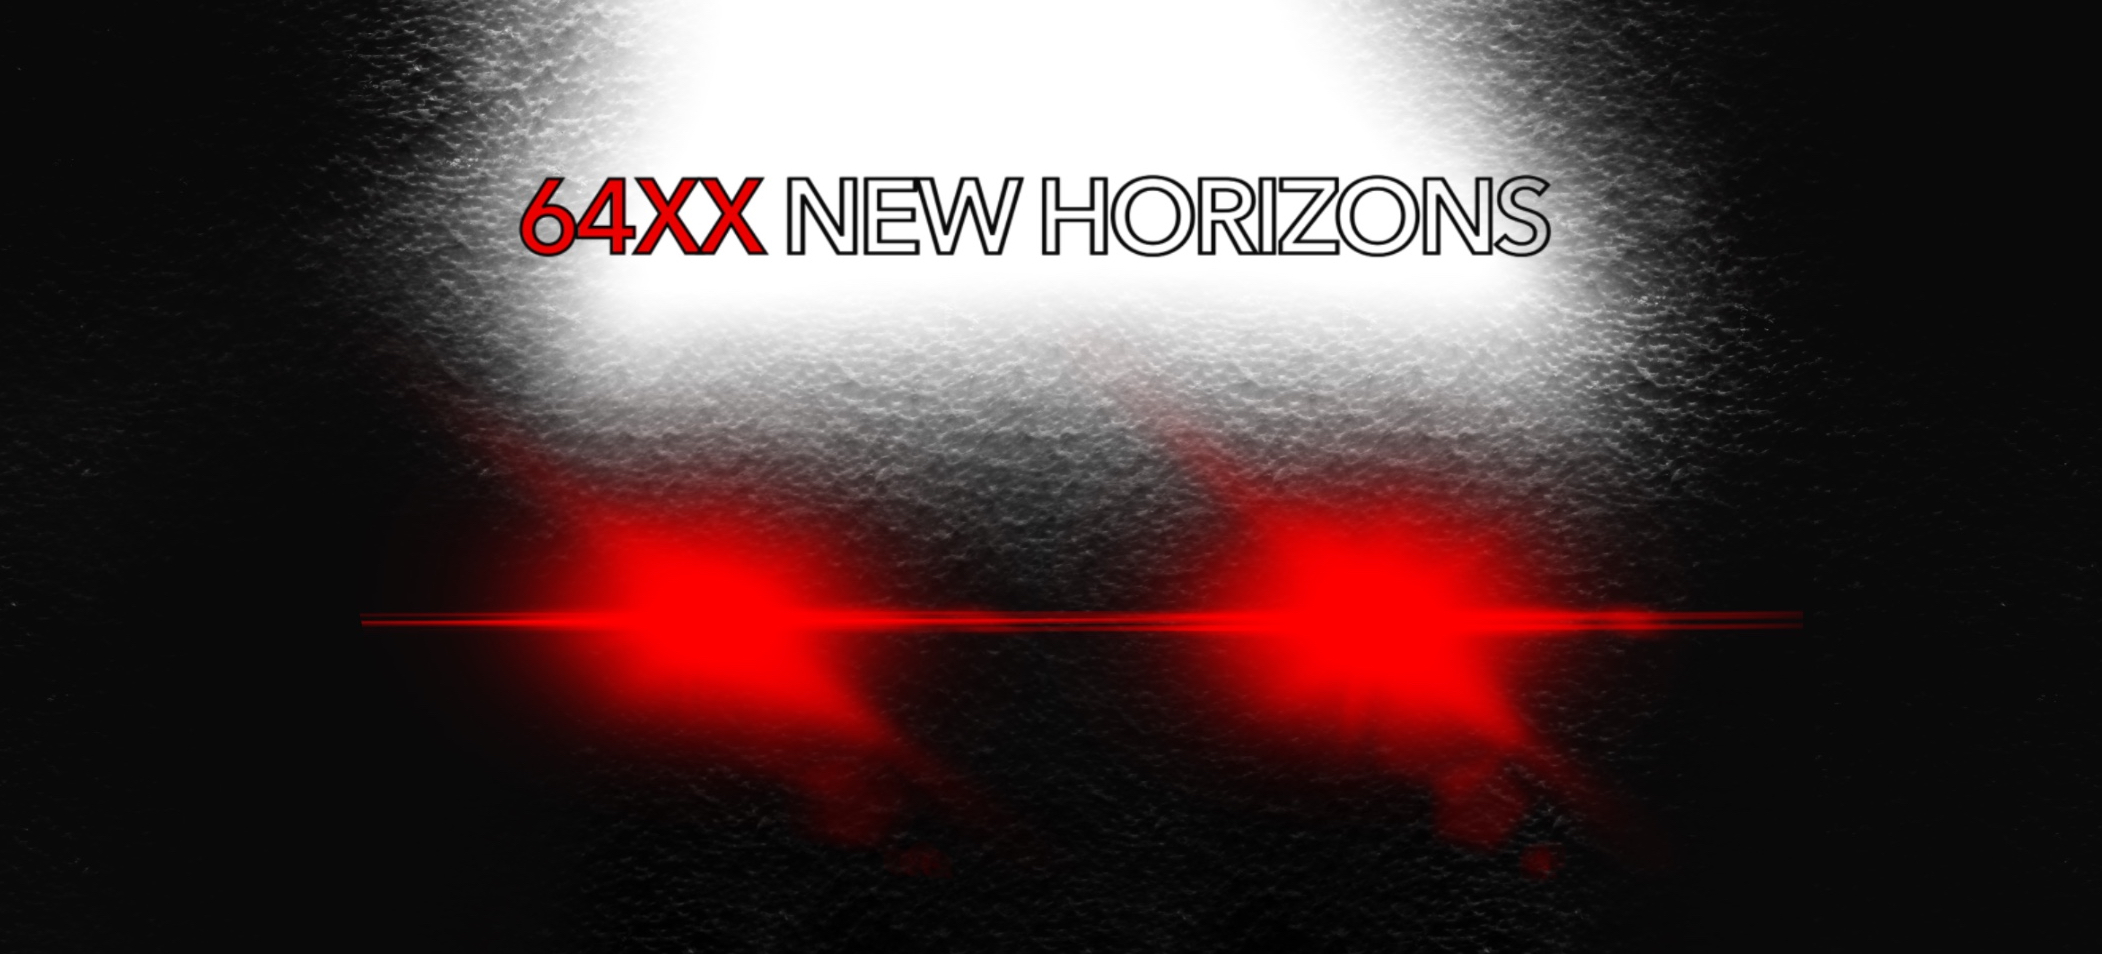 🇬🇧 64XX New Horizons